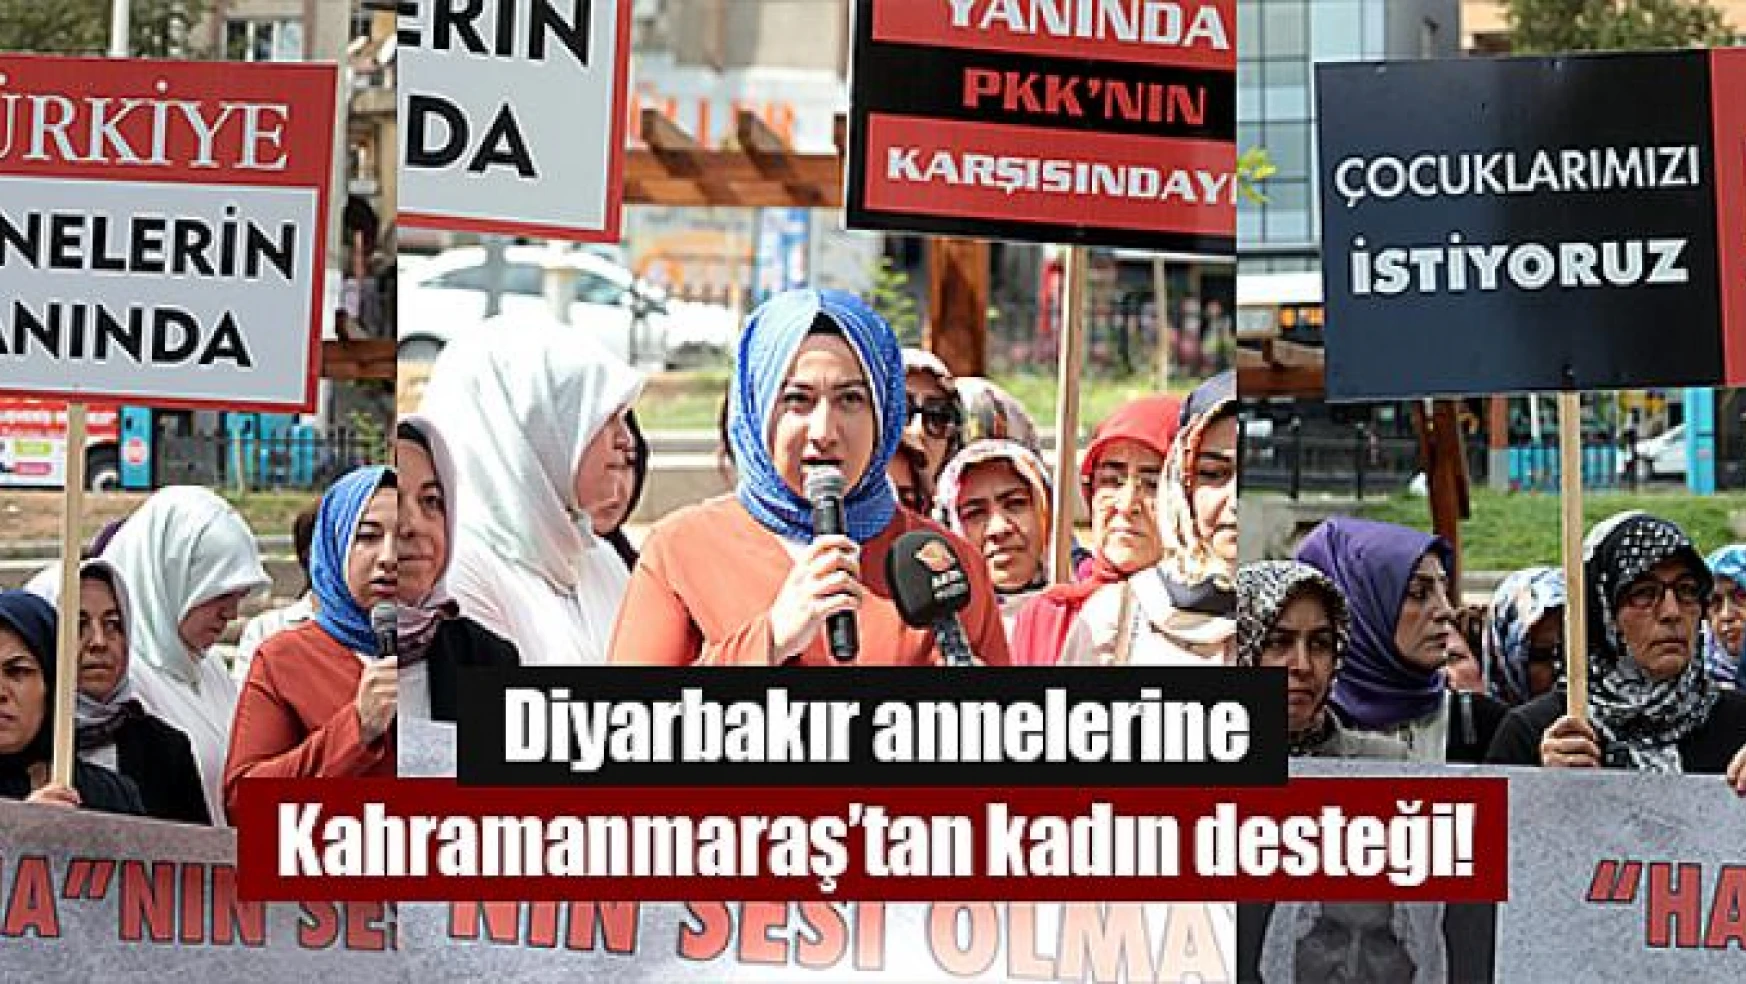 Diyarbakır annelerine Kahramanmaraş'tan kadın desteği!